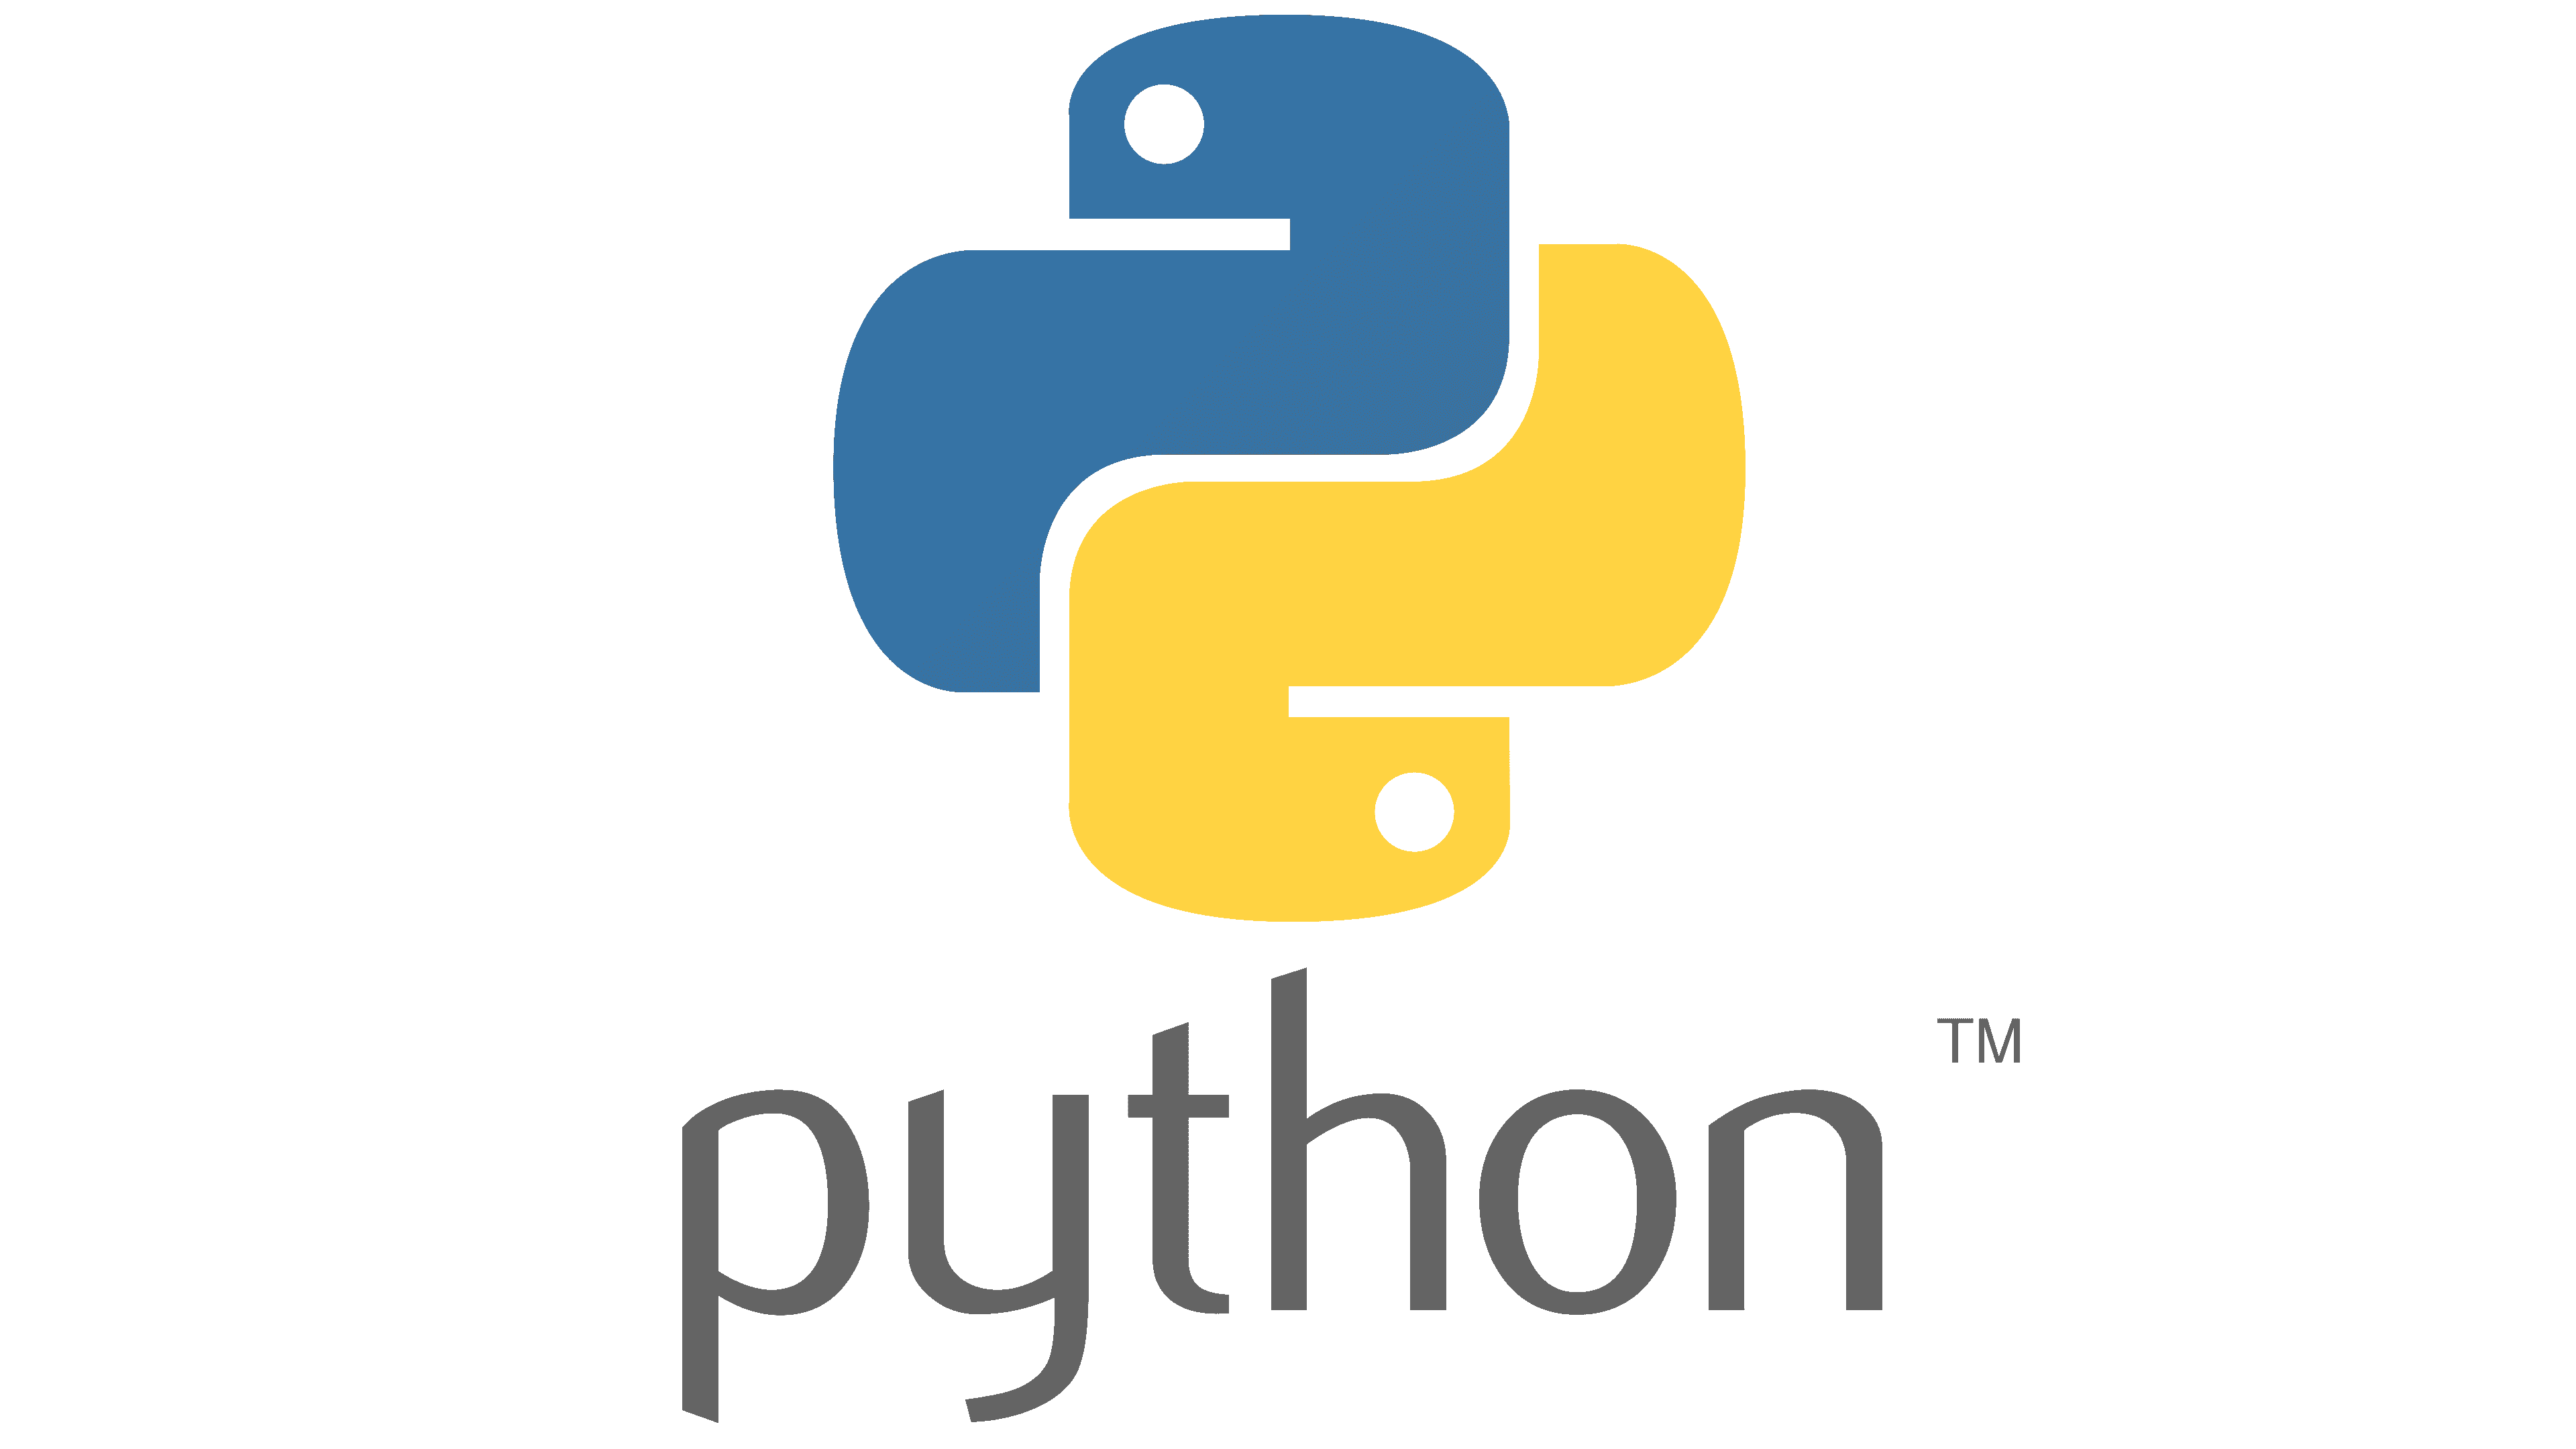 Python lab